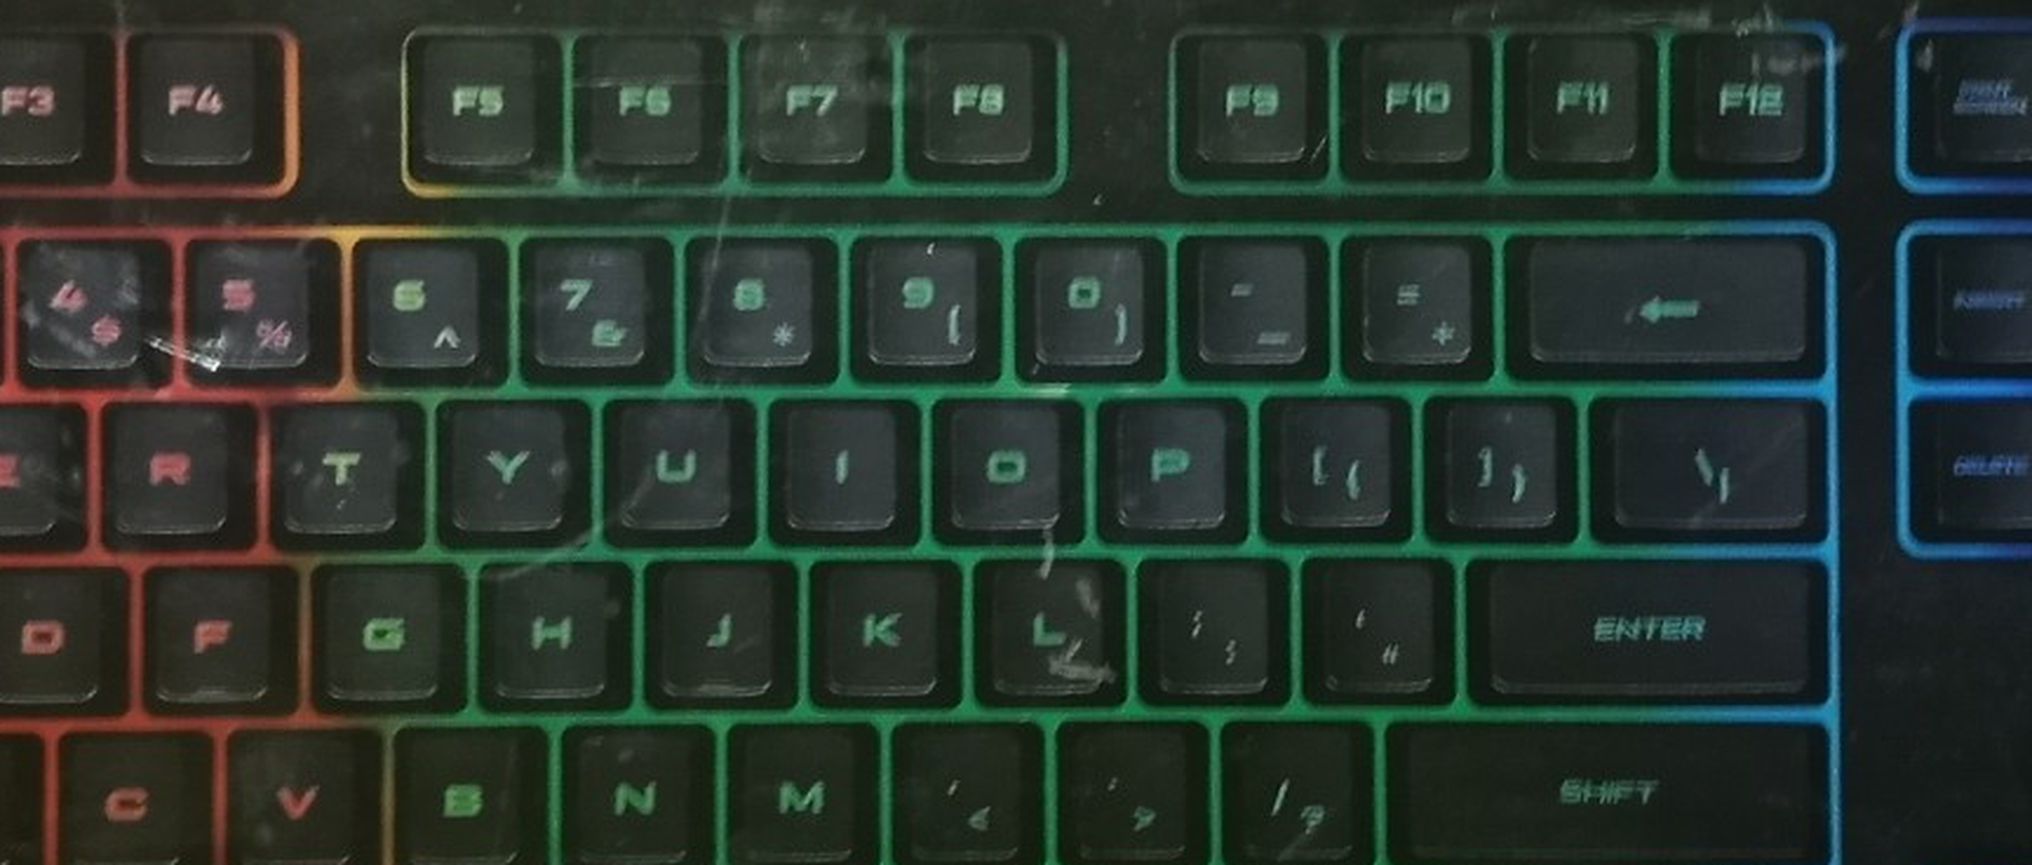 Corsair Led Gaming Keyboard